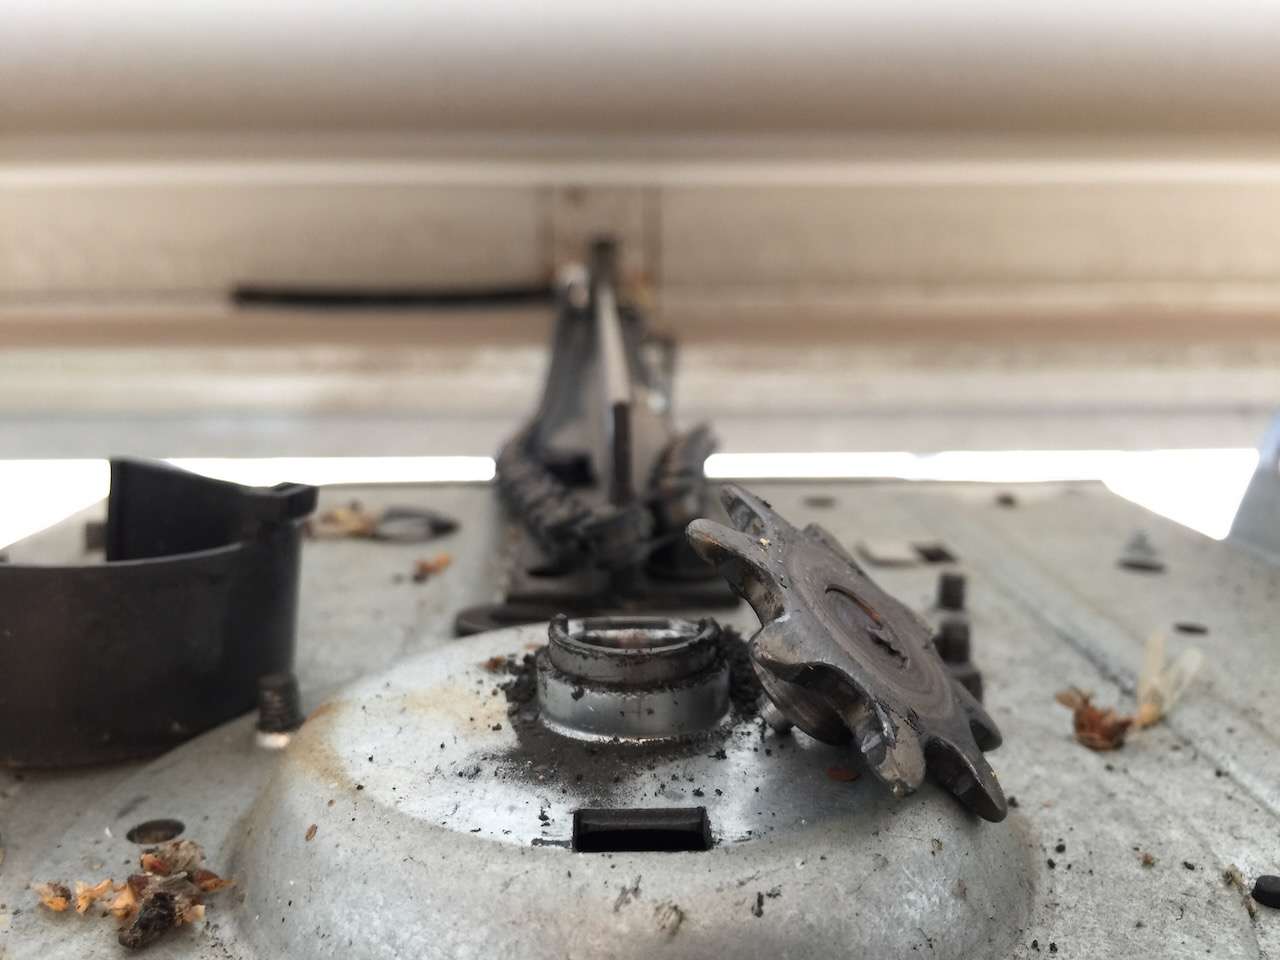 Broken sprocket on LiftMaster garage door opener